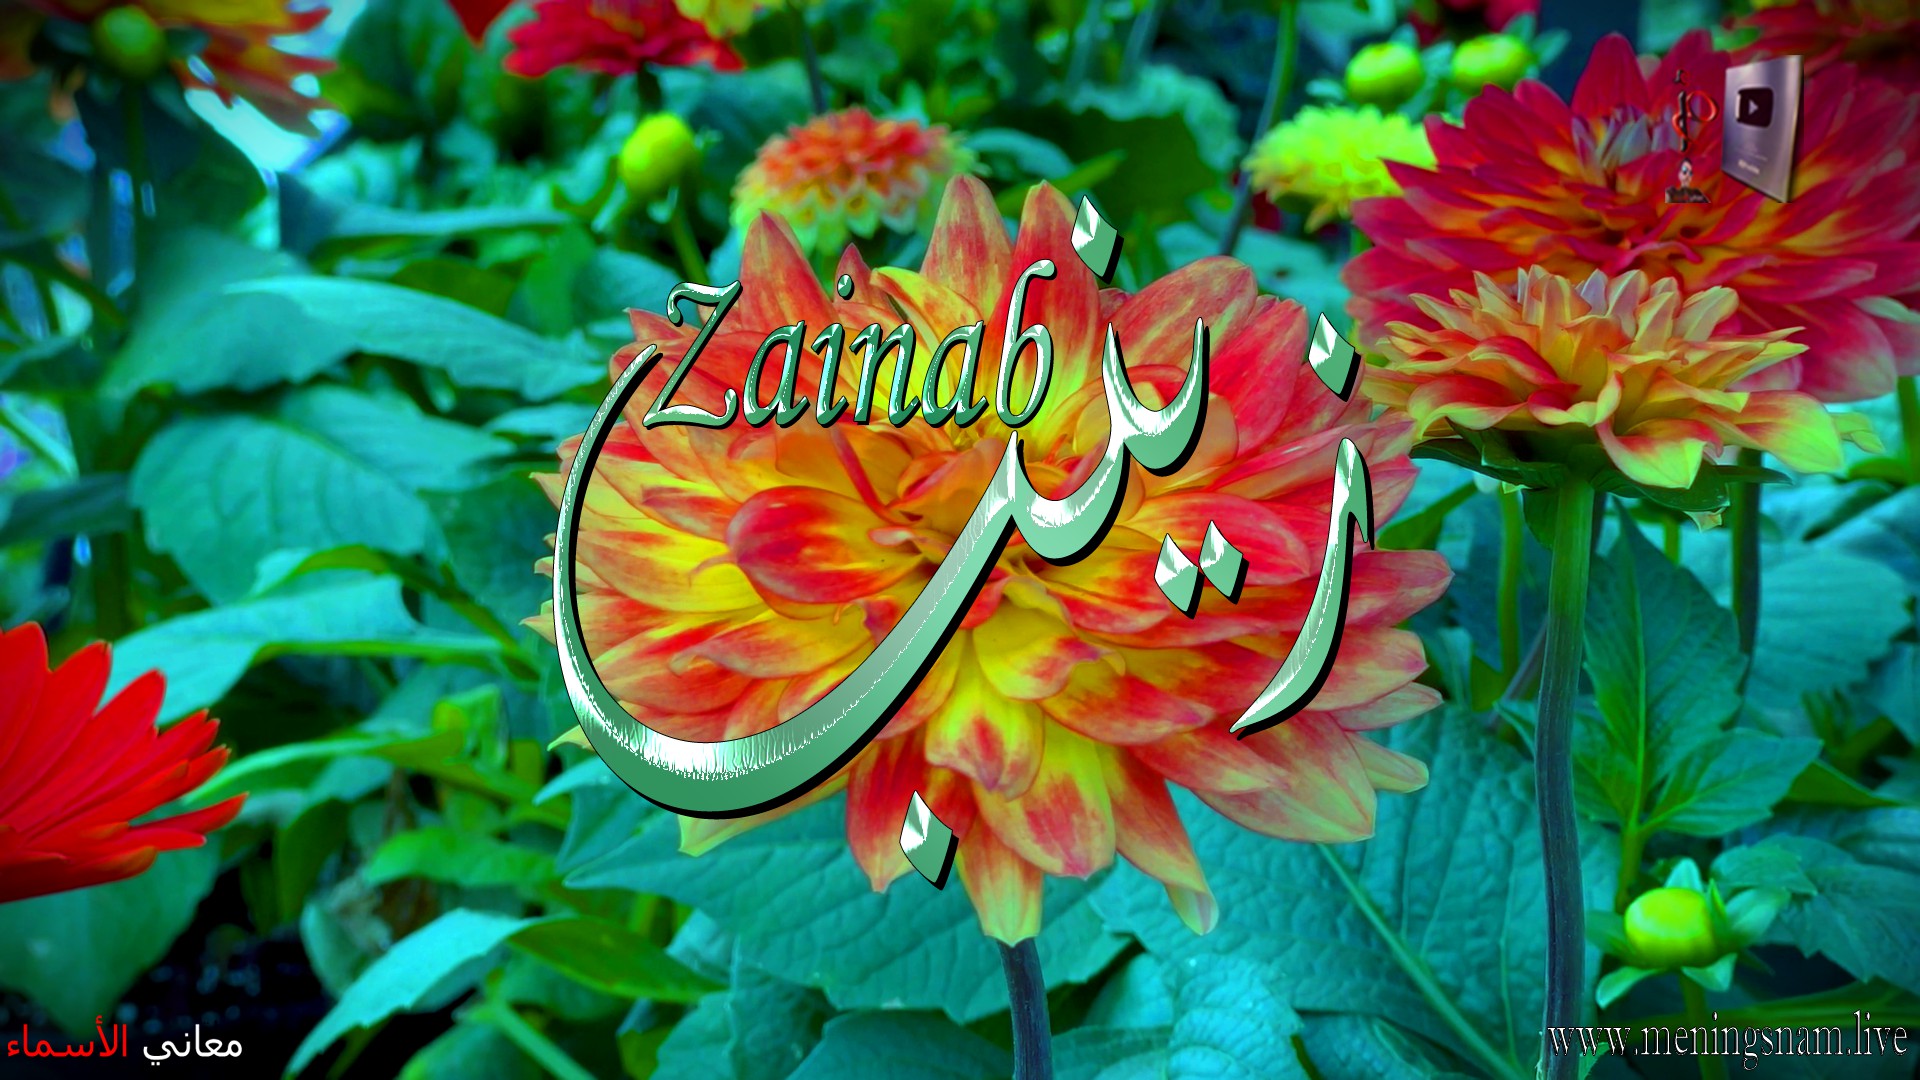 معنى اسم, زينب, وصفات, حاملة, هذا الاسم, Zainab,